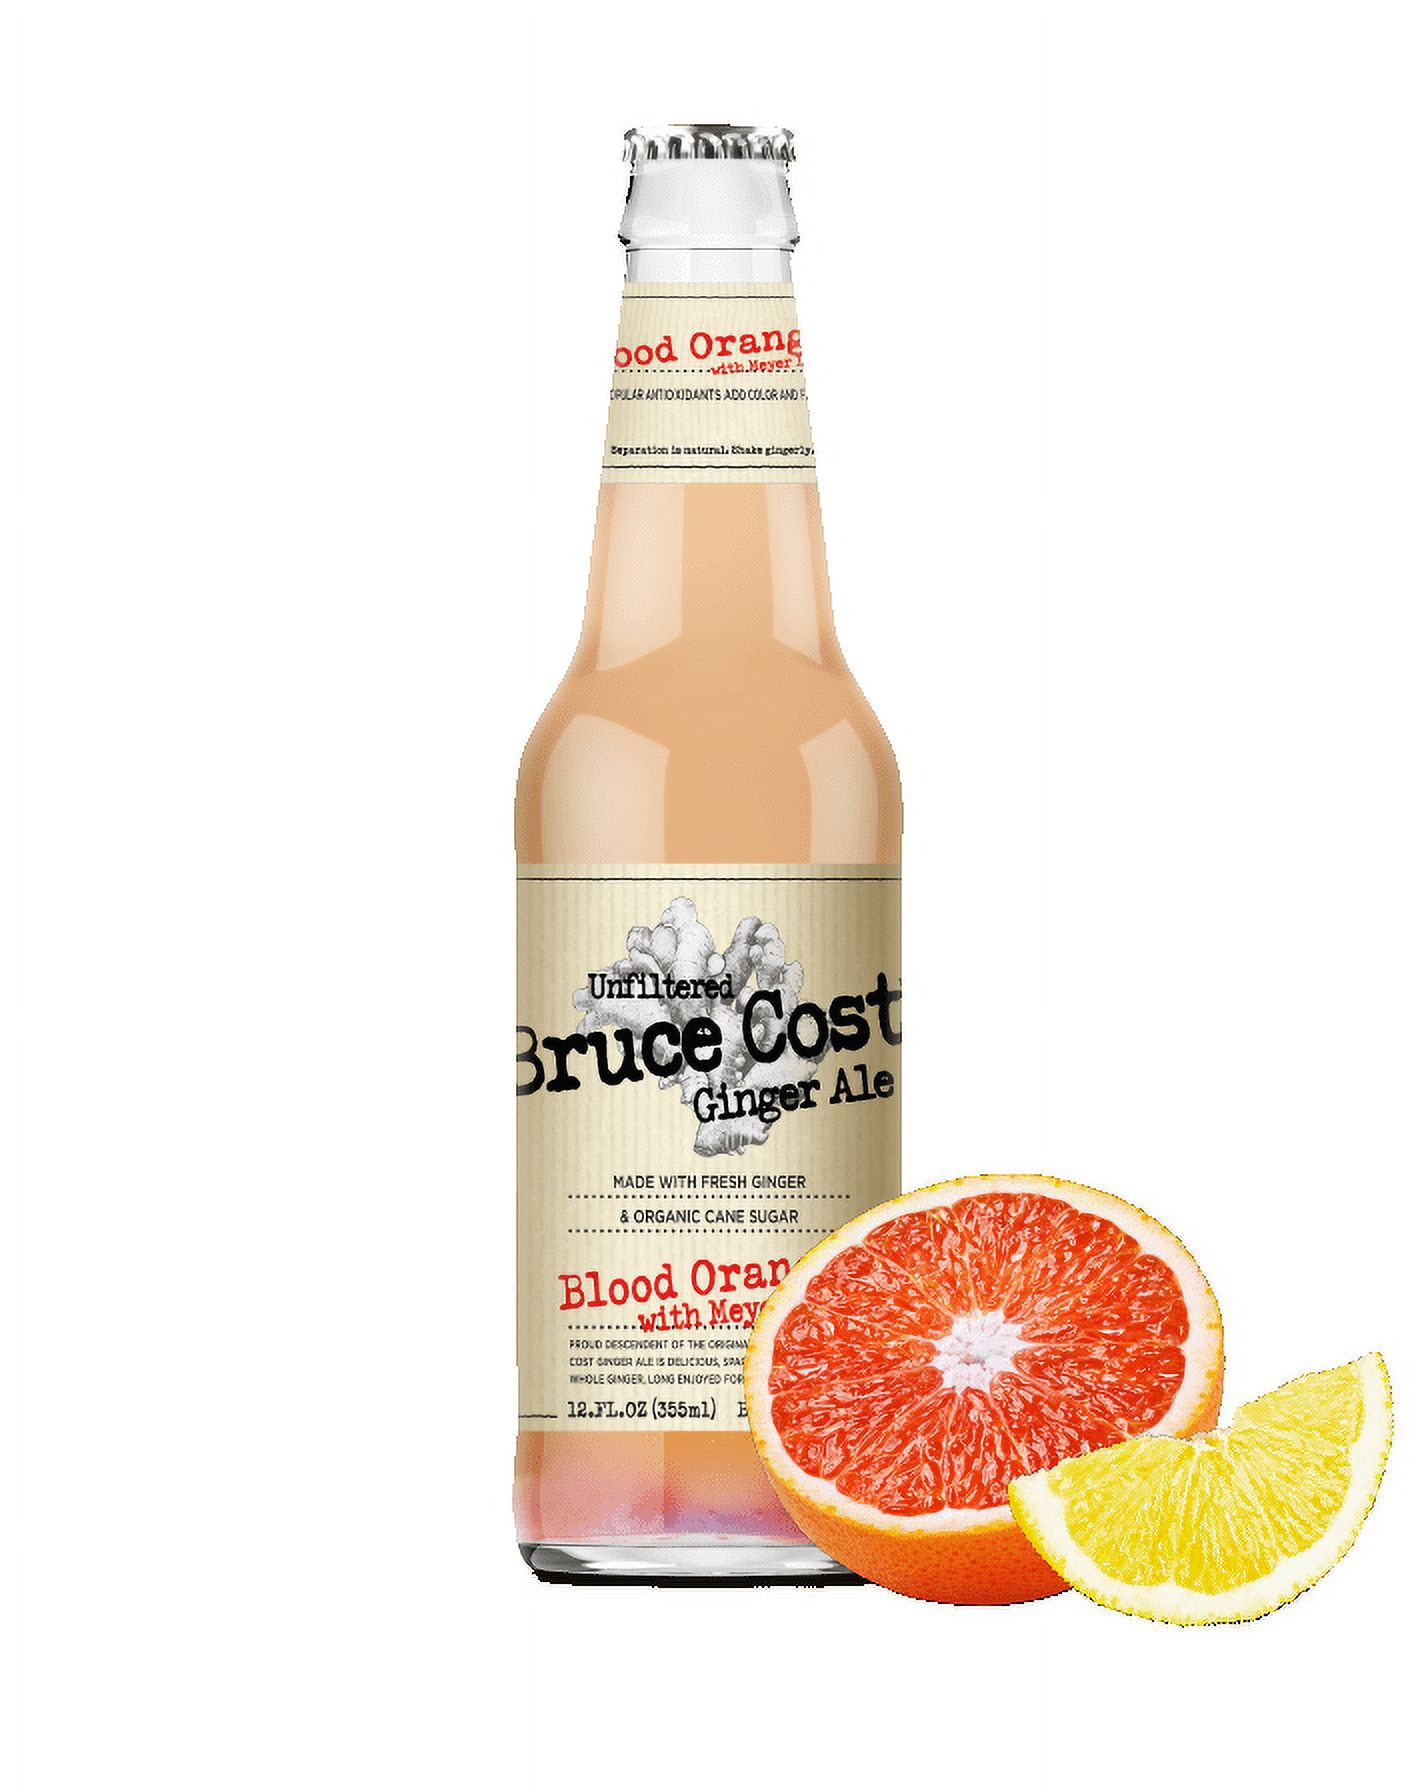 Bruce Cost Ginger Ale - Blood Orange With Meyer Lemon - Case of 6 - 4/12 fl oz. - image 1 of 11